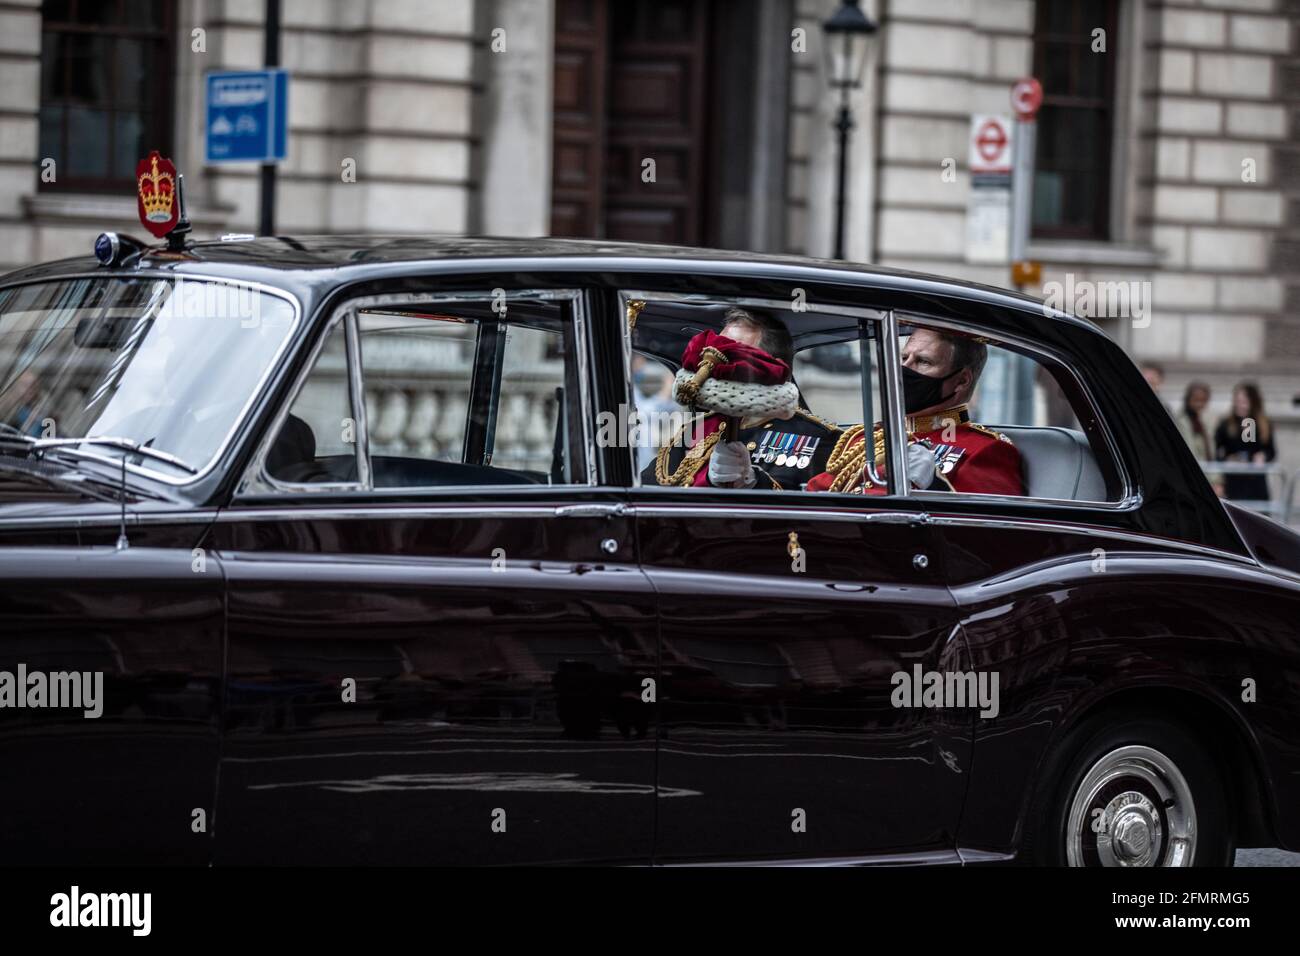 Apertura di Stato del Parlamento, alla presenza di sua Royal Majesty Queen Elizabeth II, Whitehall, Londra Centrale, Inghilterra, Regno Unito Foto Stock